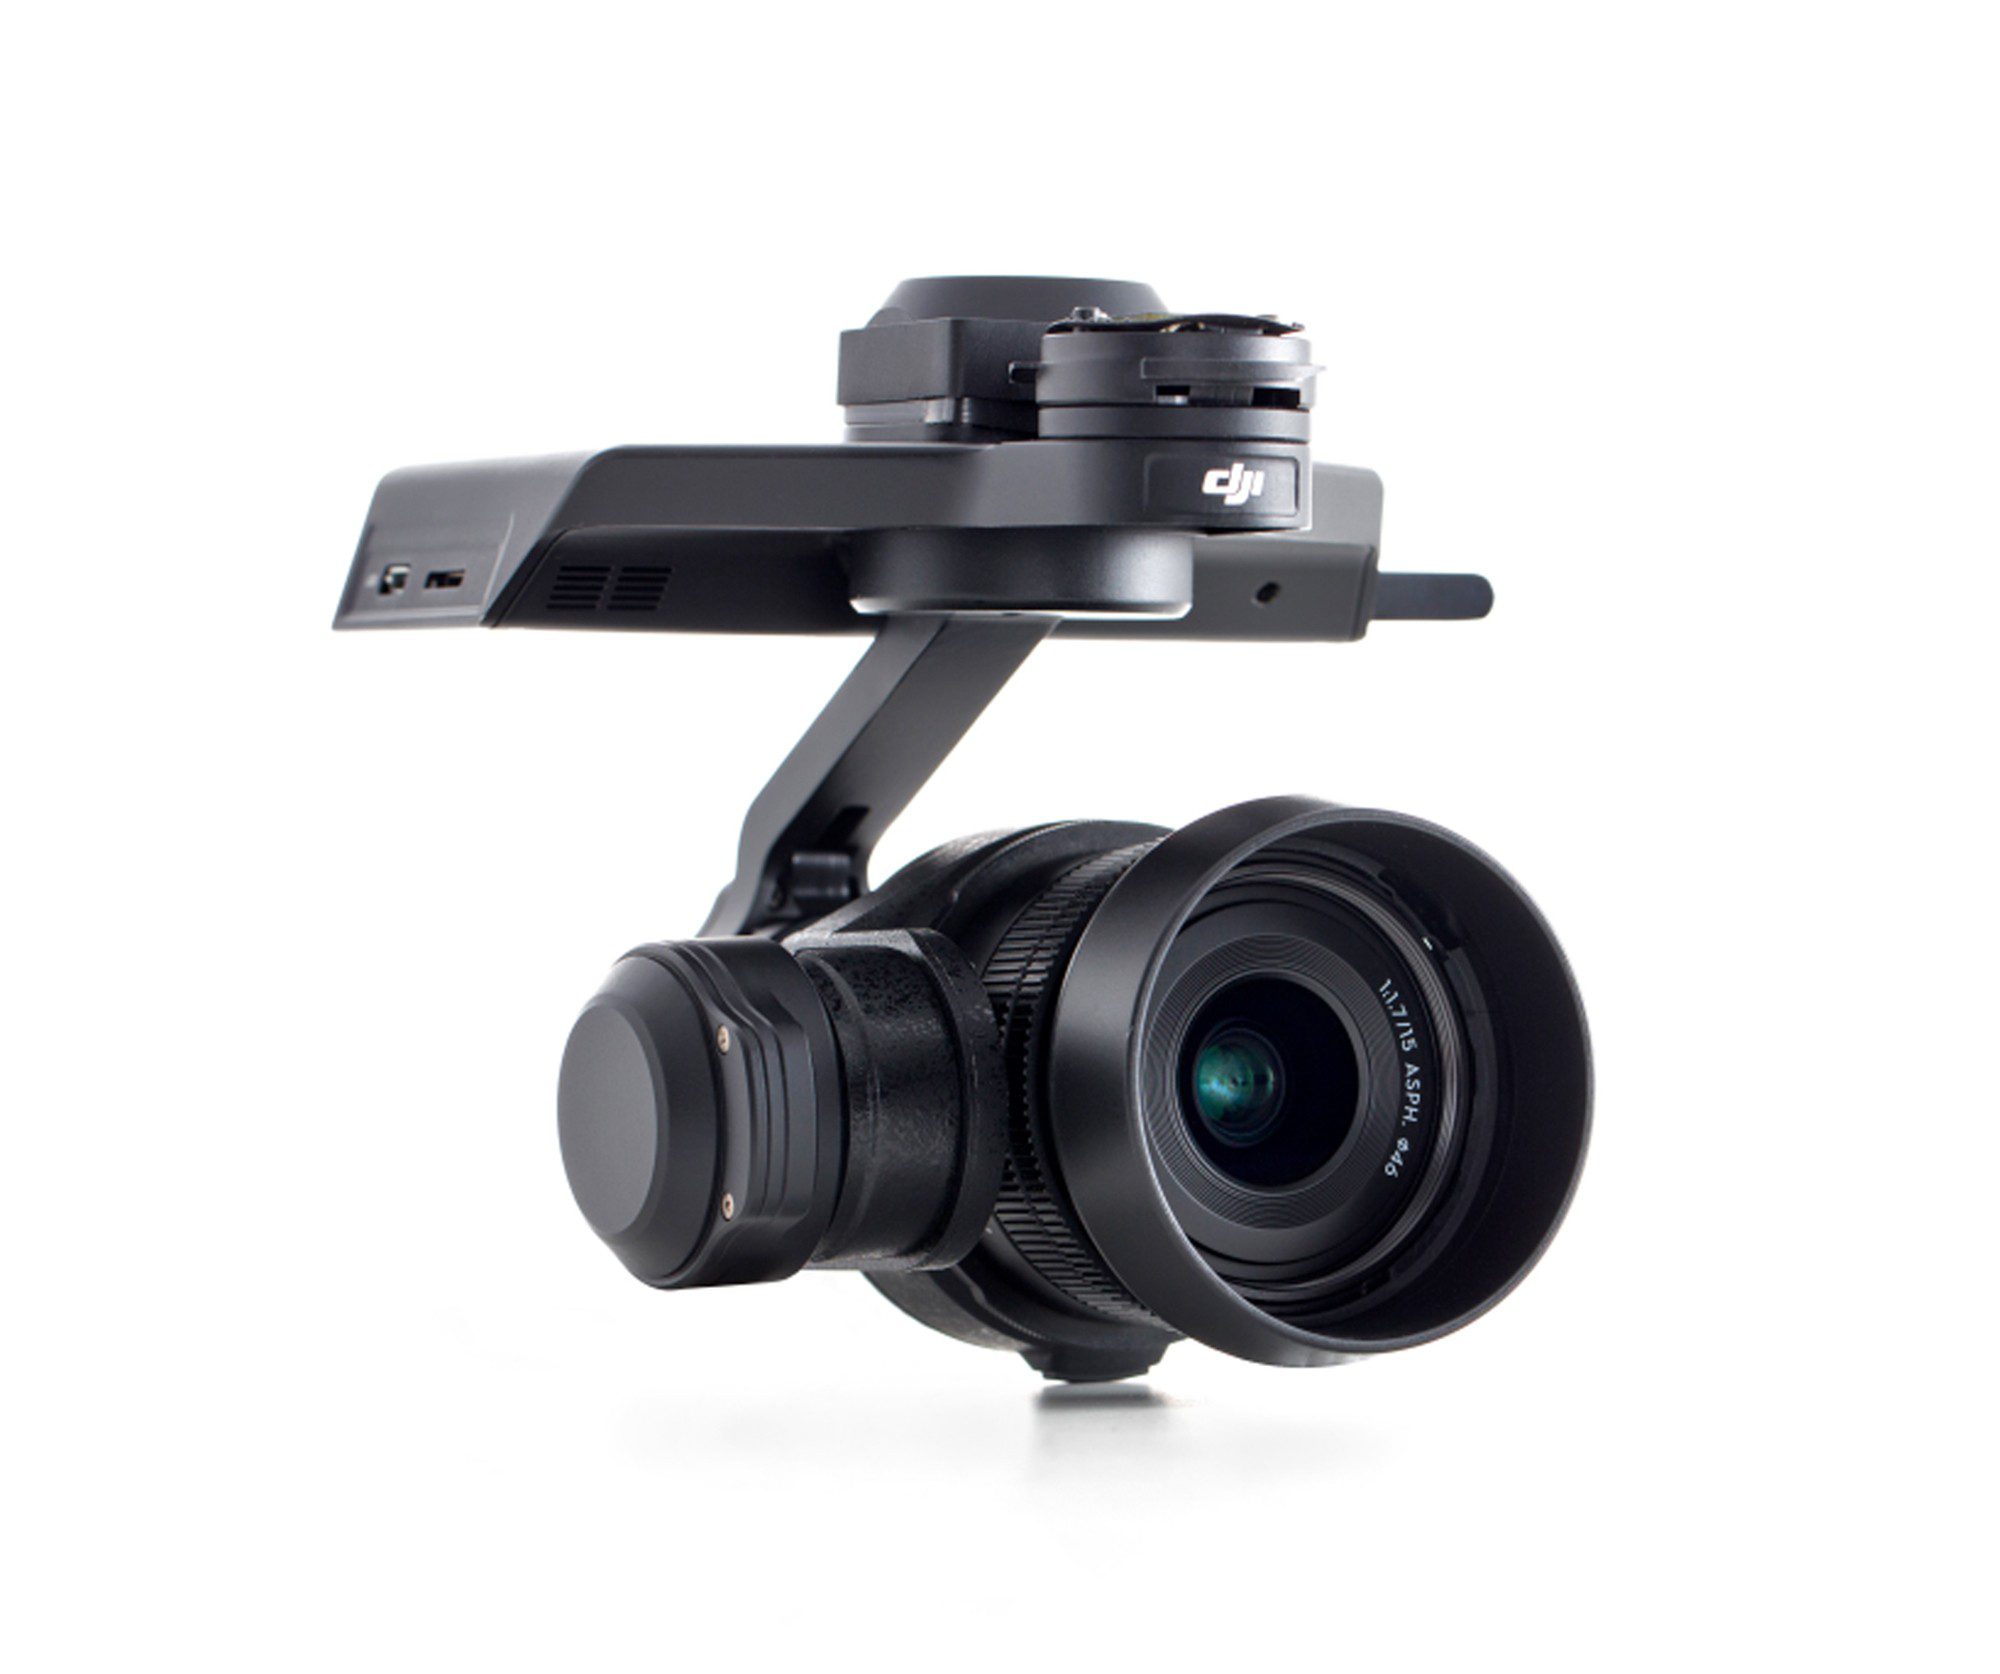 DJI Zenmuse X5R (With DJI MFT Lens)